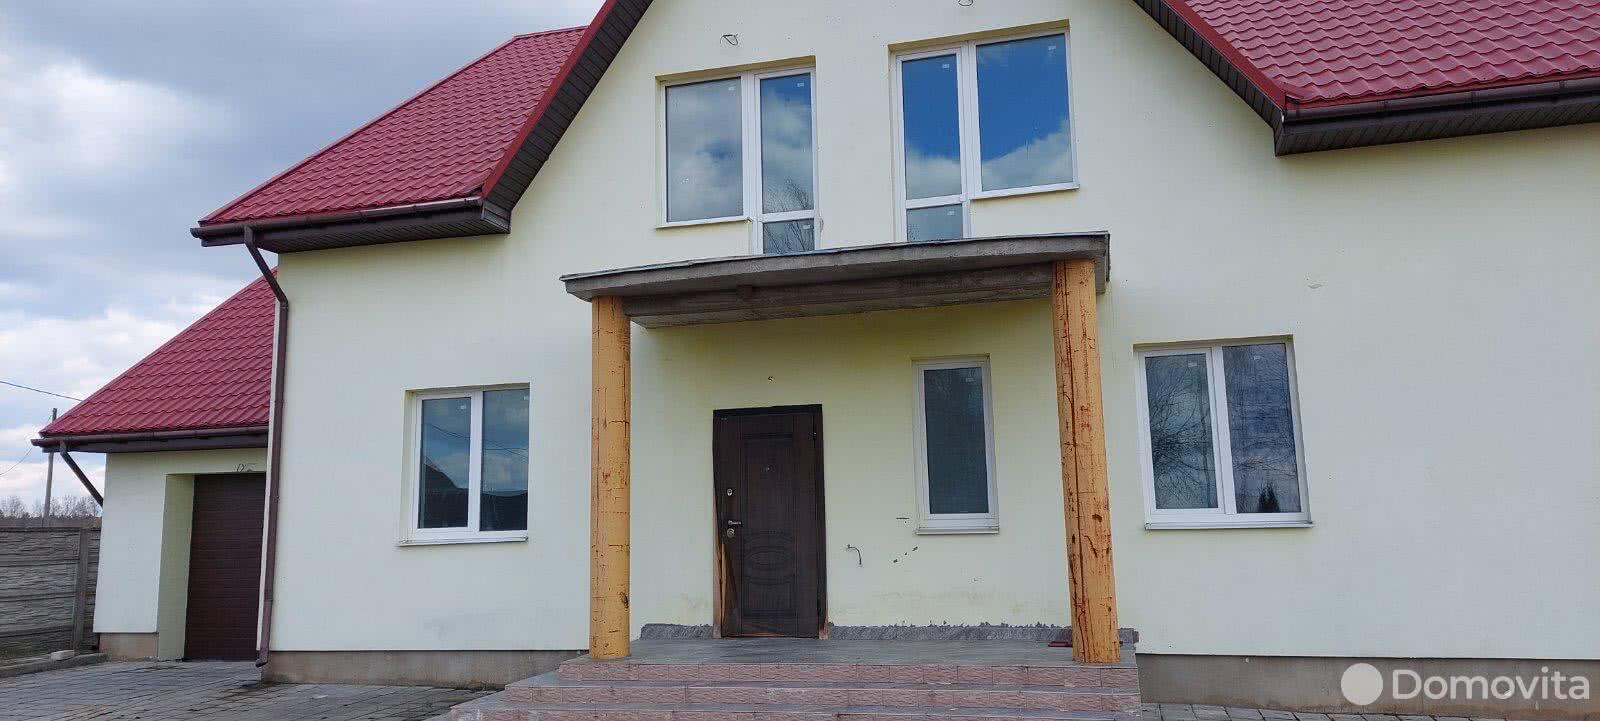 Продажа 2-этажного дома в Вязье, Могилевская область ул. Восточная, 89900USD, код 633862 - фото 6